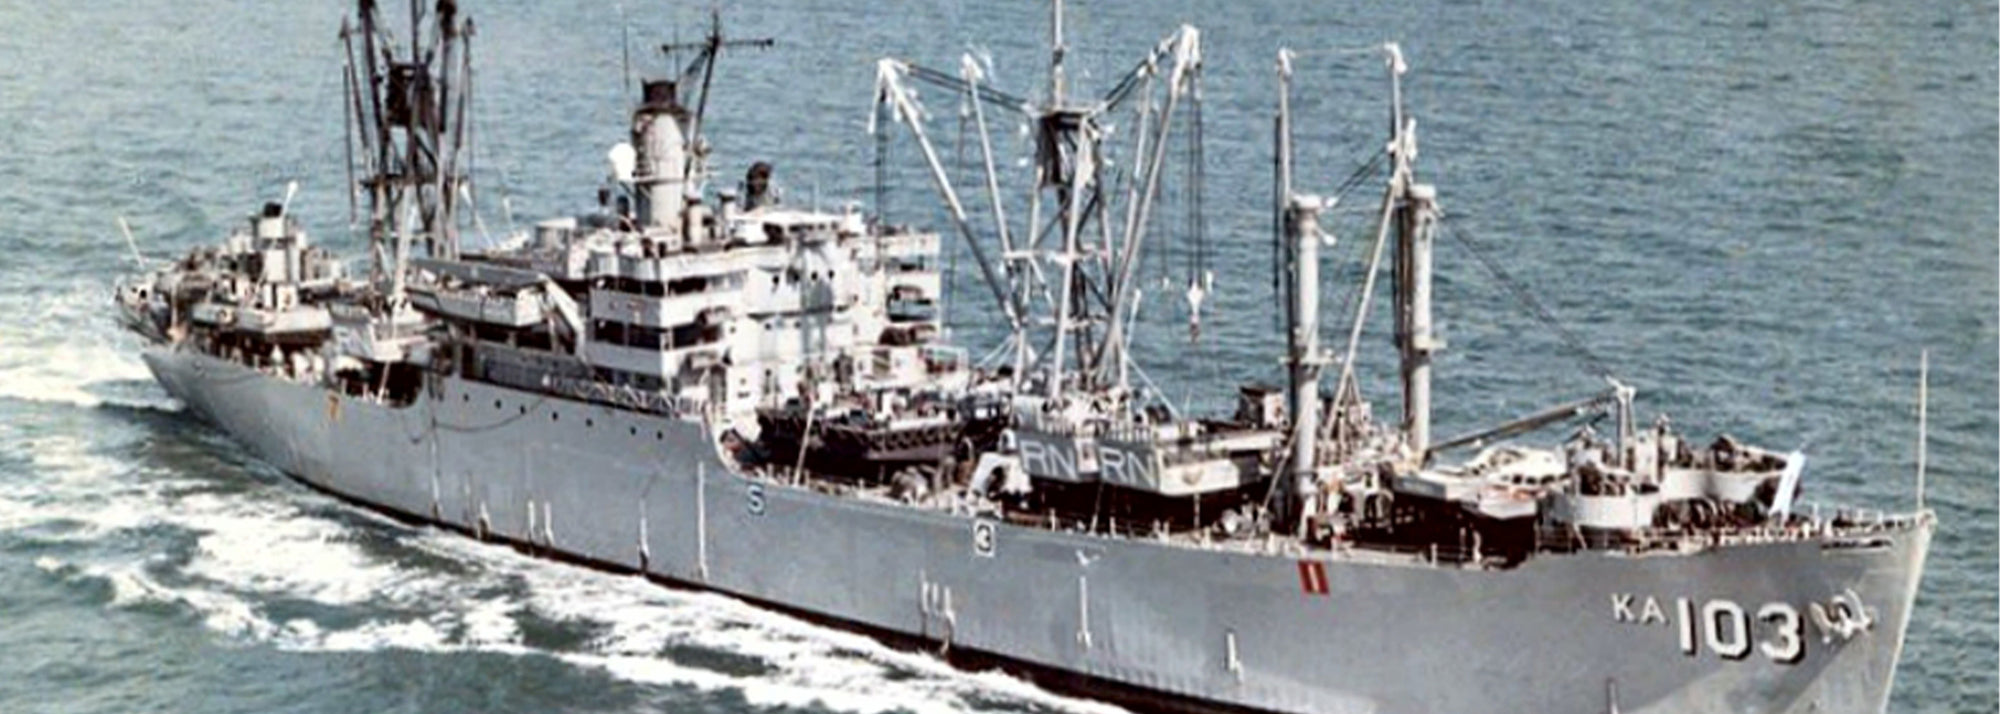 USS Rankin (AKA-103/LKA-103) at sea